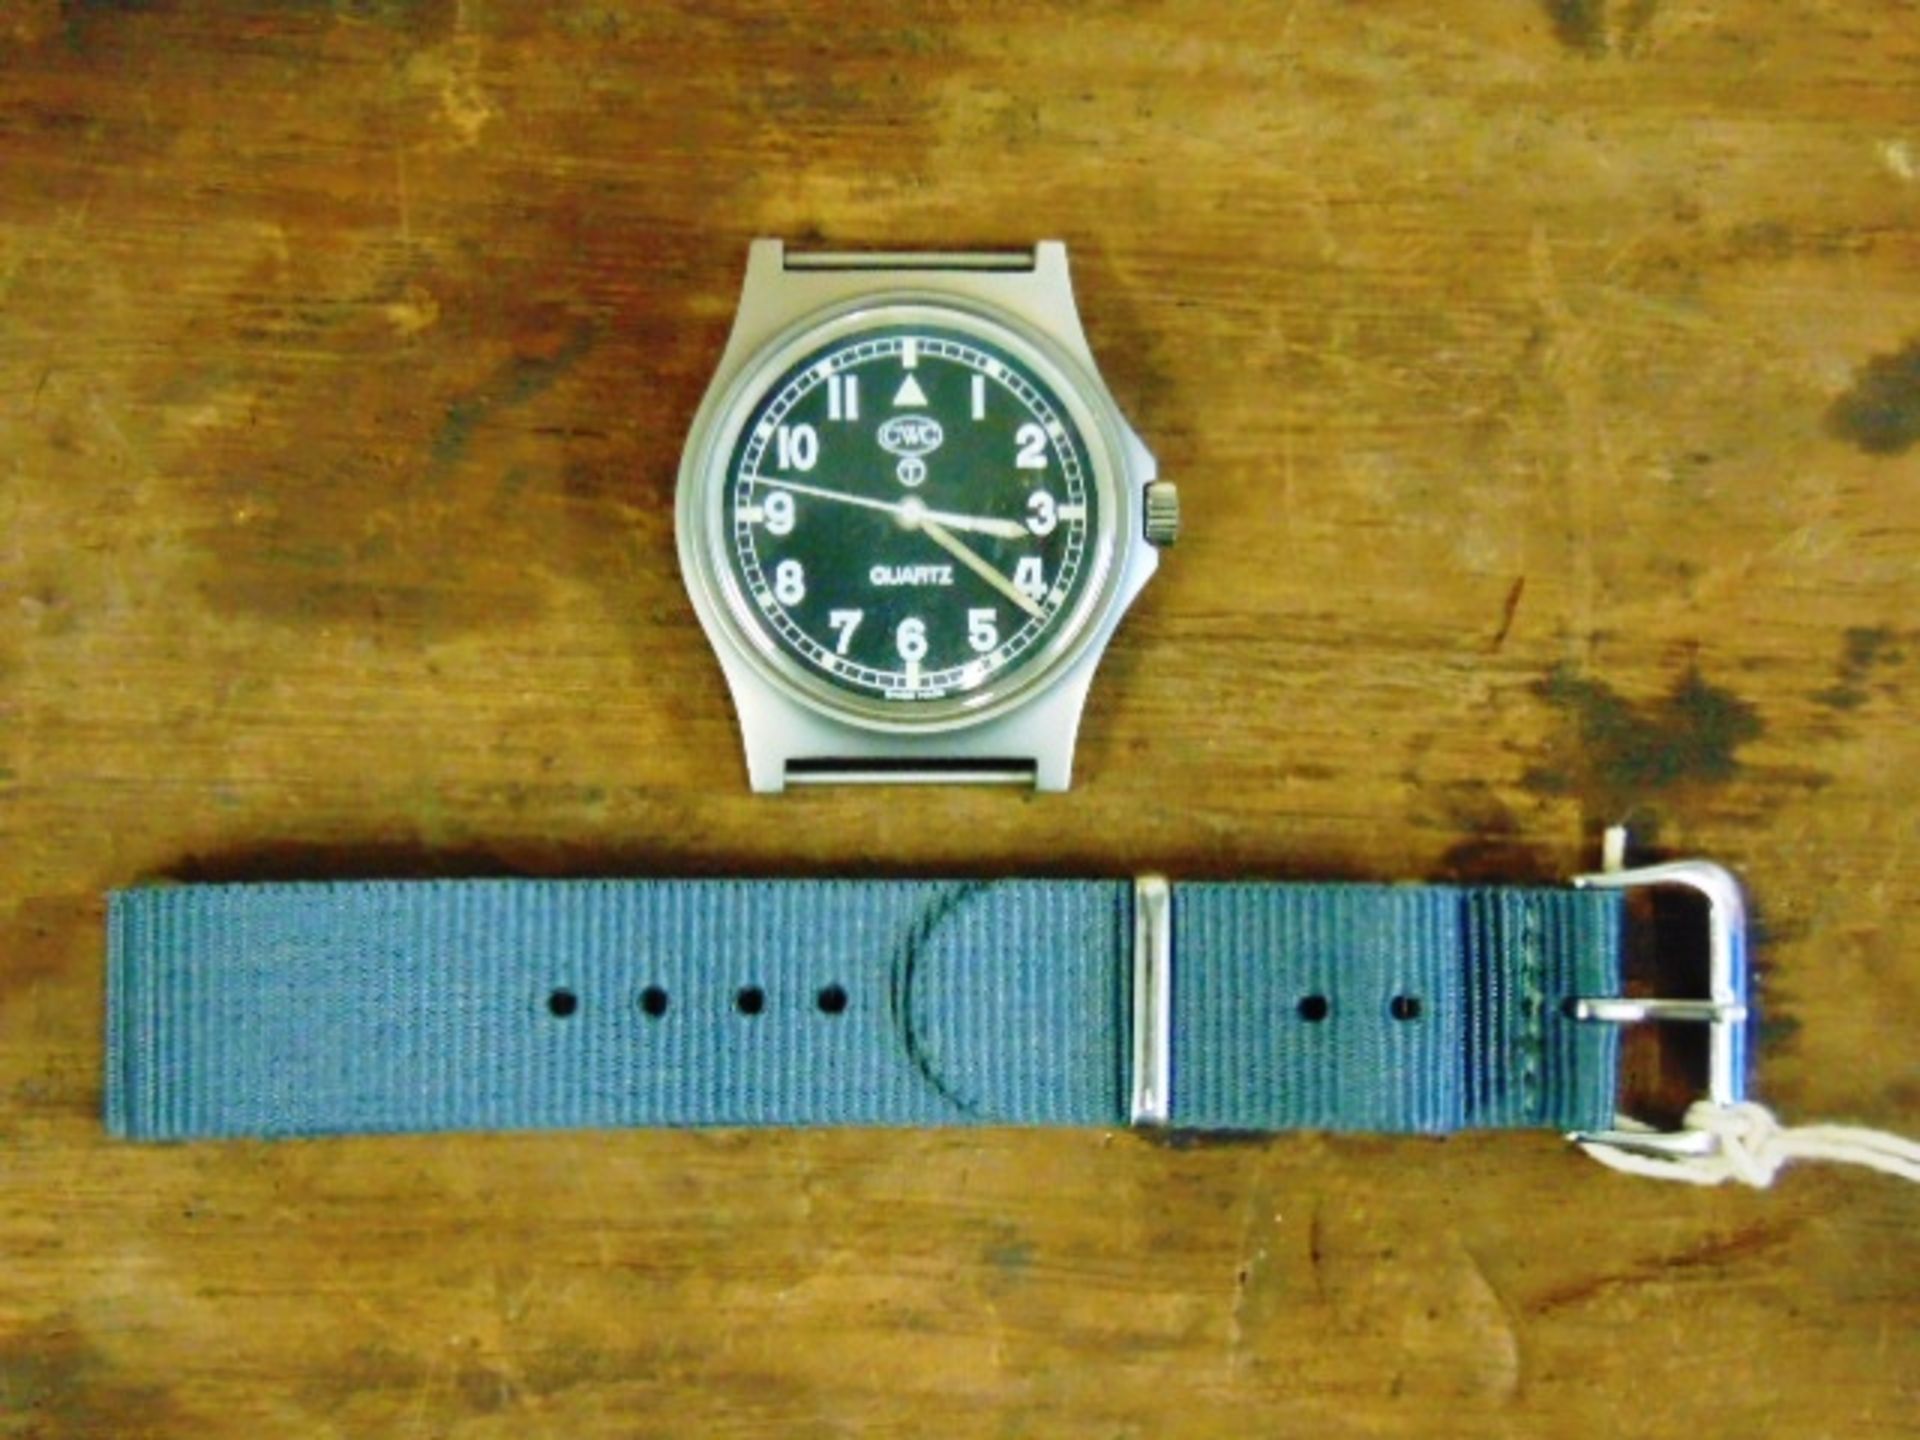 Unissued Genuine British Army, Waterproof CWC quartz wrist watch - Image 4 of 6